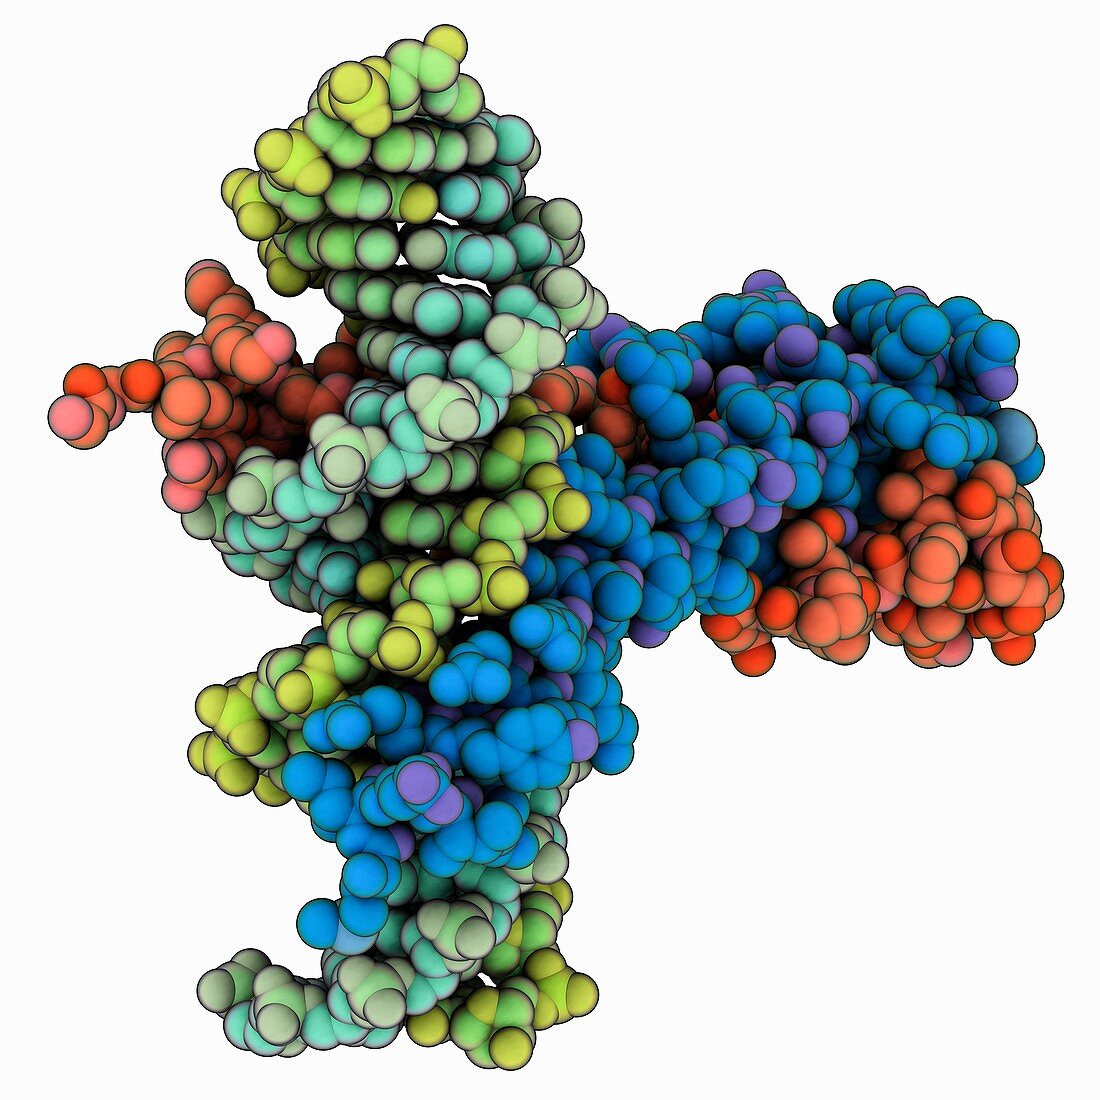 Epstein-Barr virus transcription factor